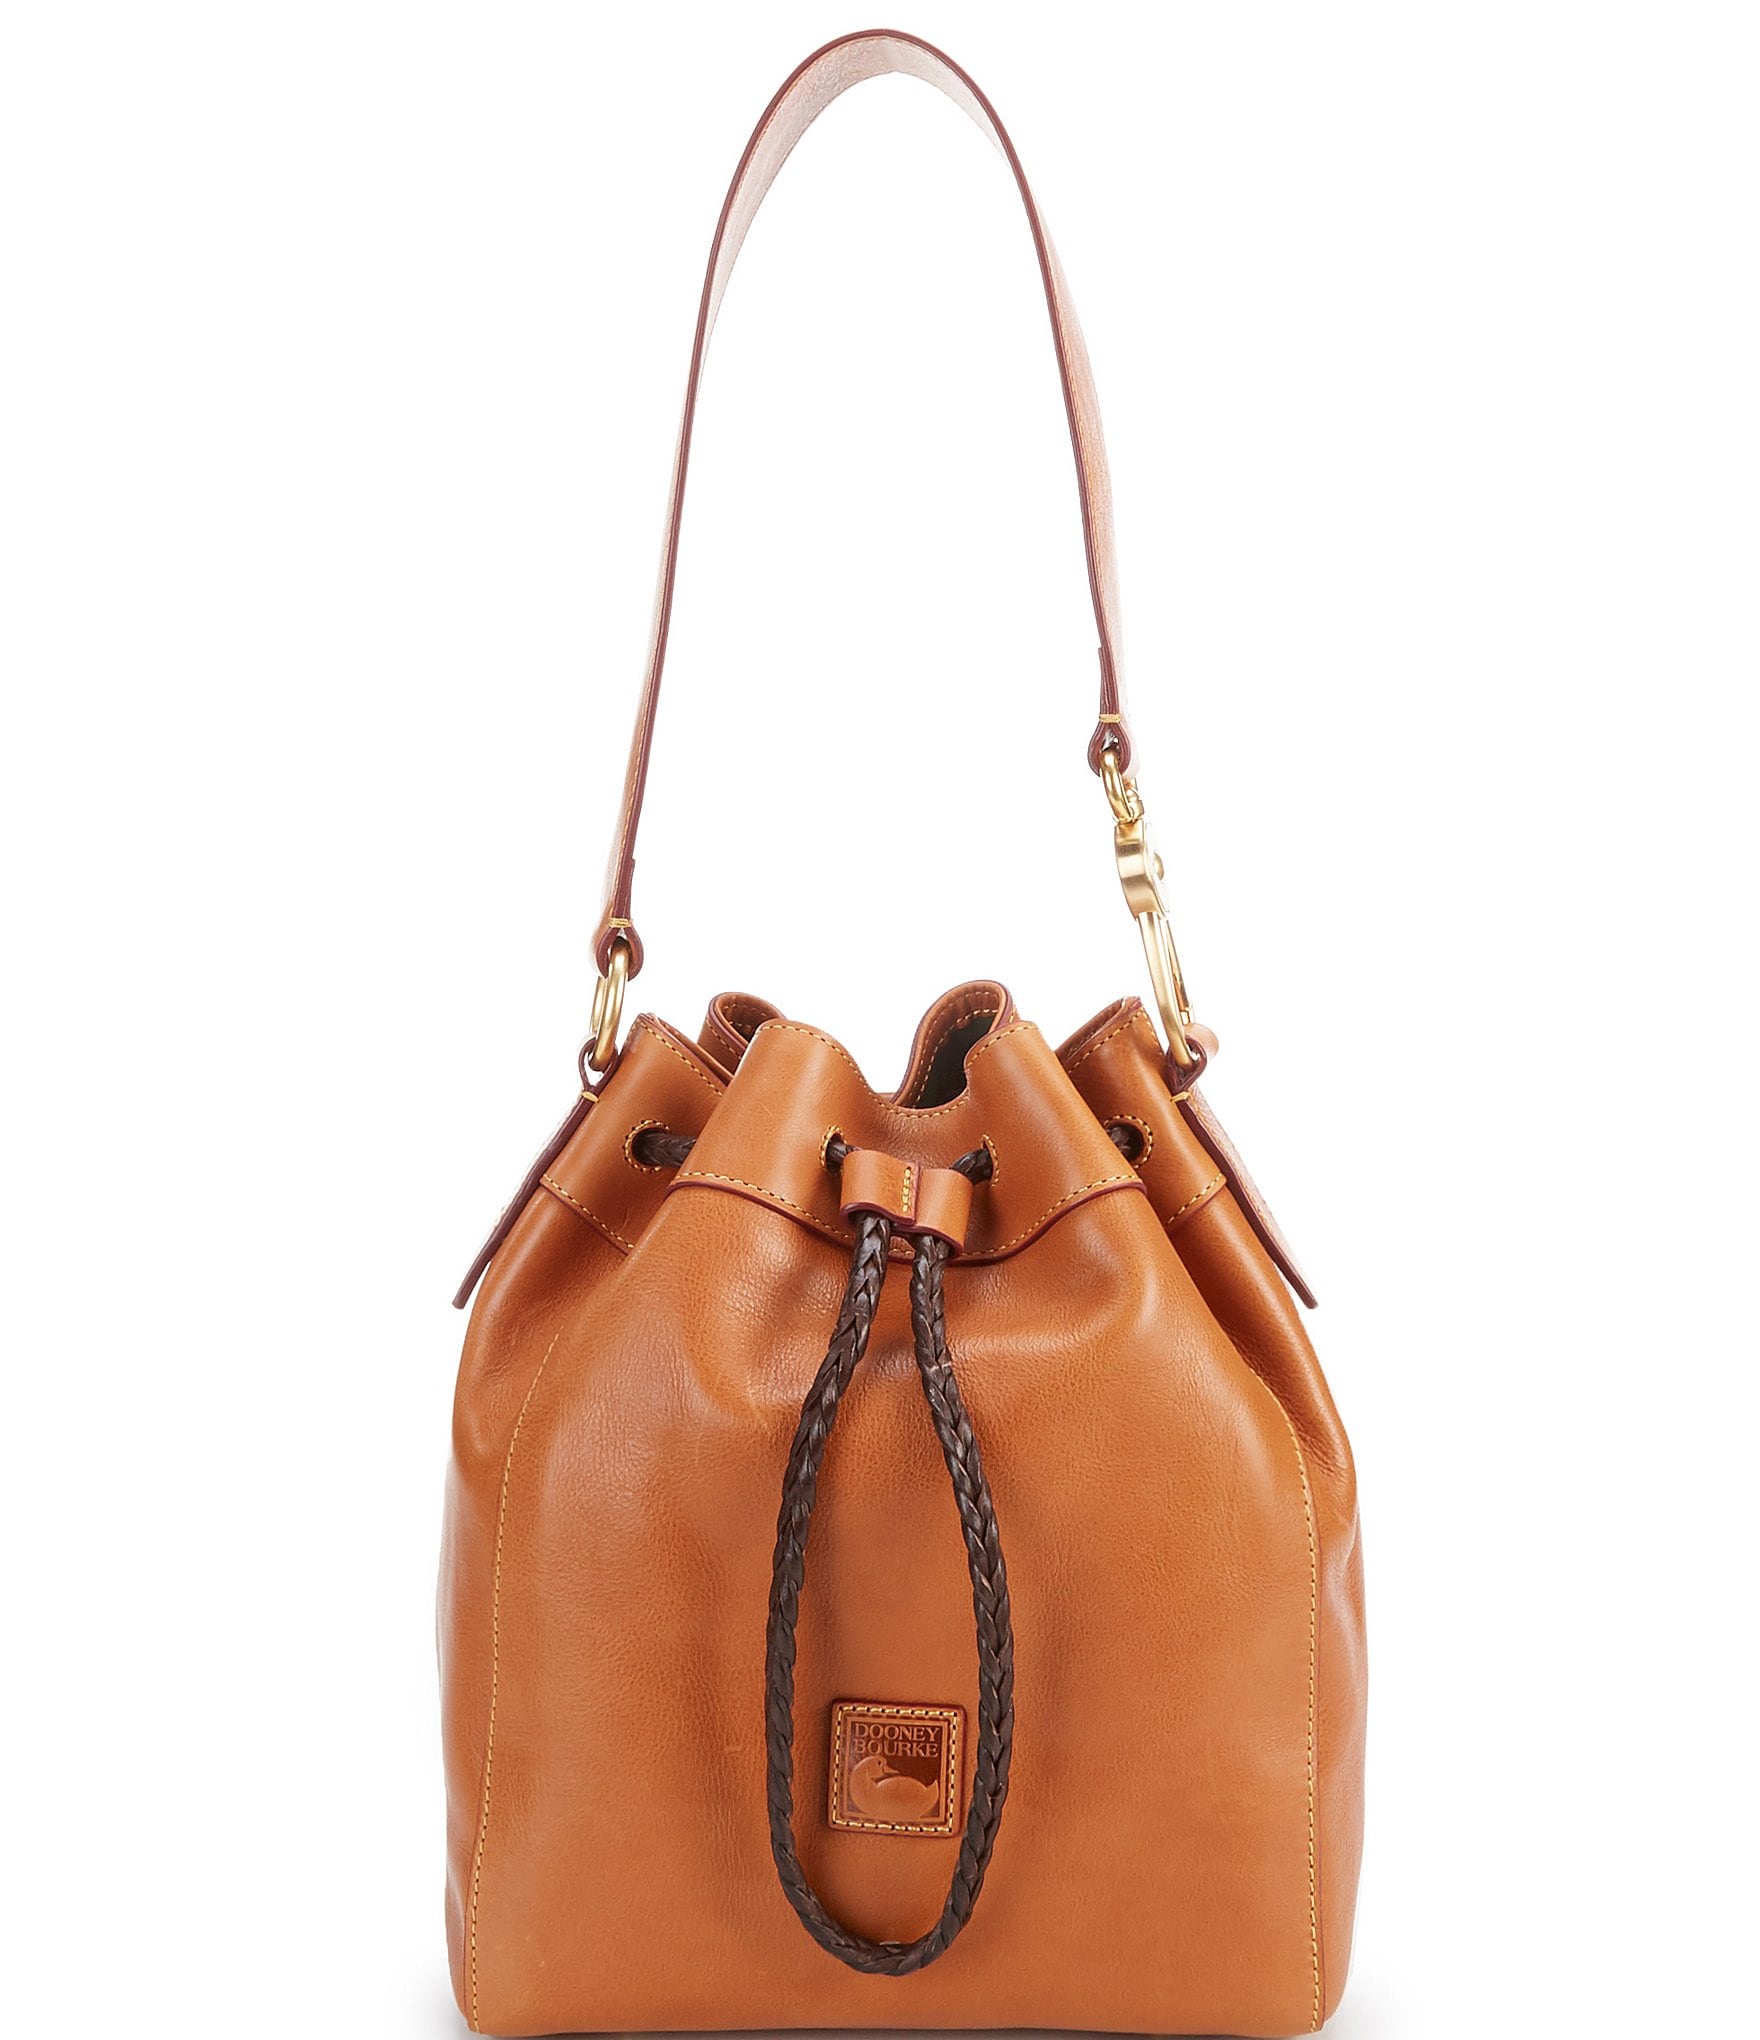 Drop length of Dooney & Bourke All-Weather Handbags